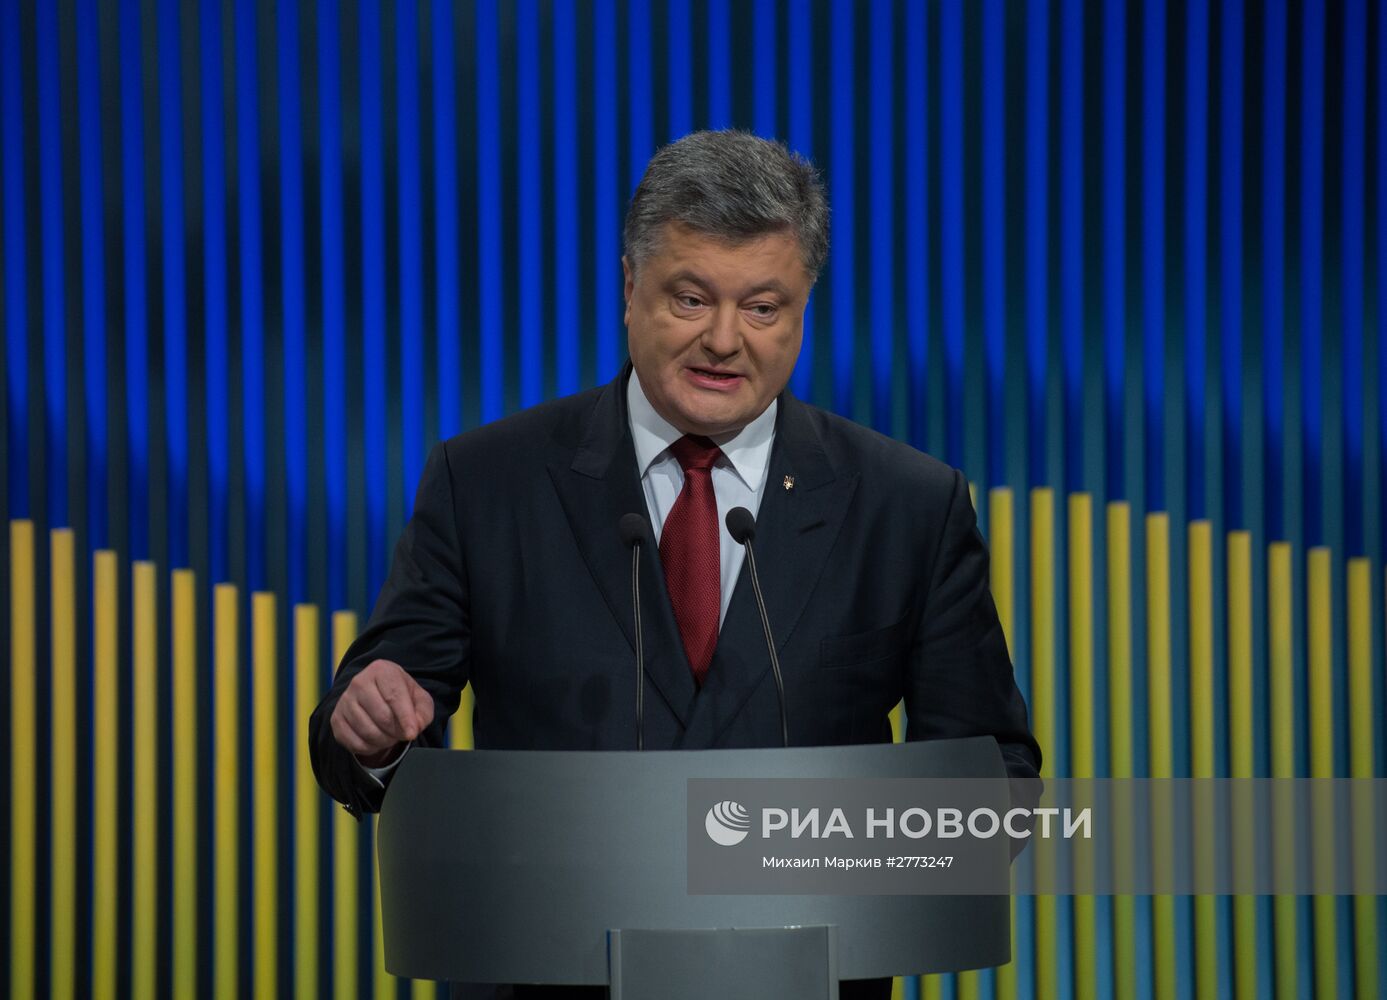 Президент Украины П. Порошенко провел первую пресс-конференцию в 2016 году